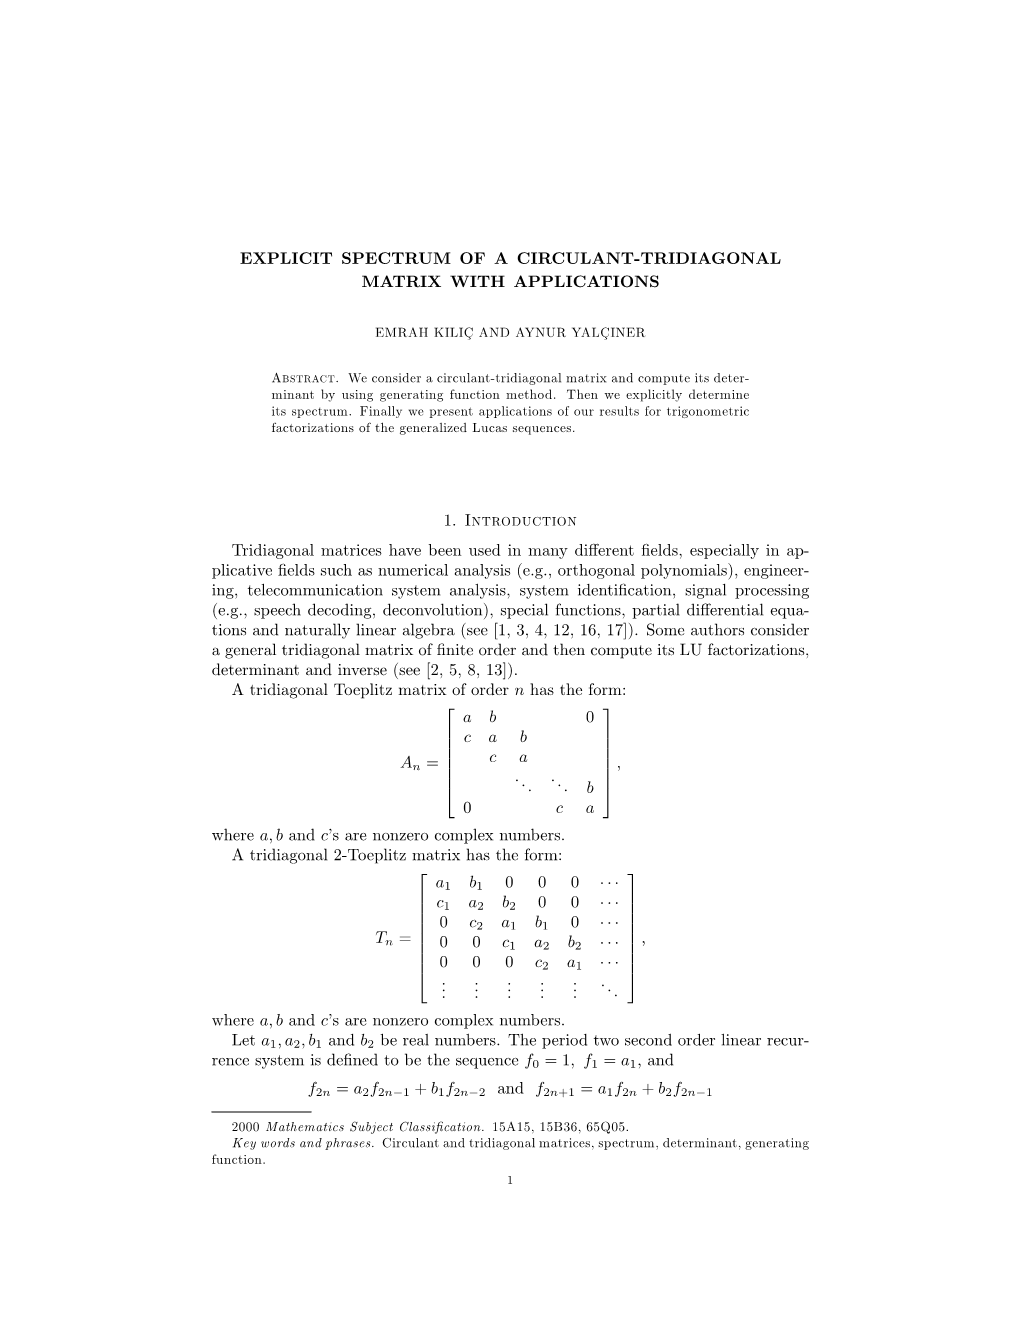 Explicit Spectrum of a Circulant-Tridiagonal Matrix with Applications